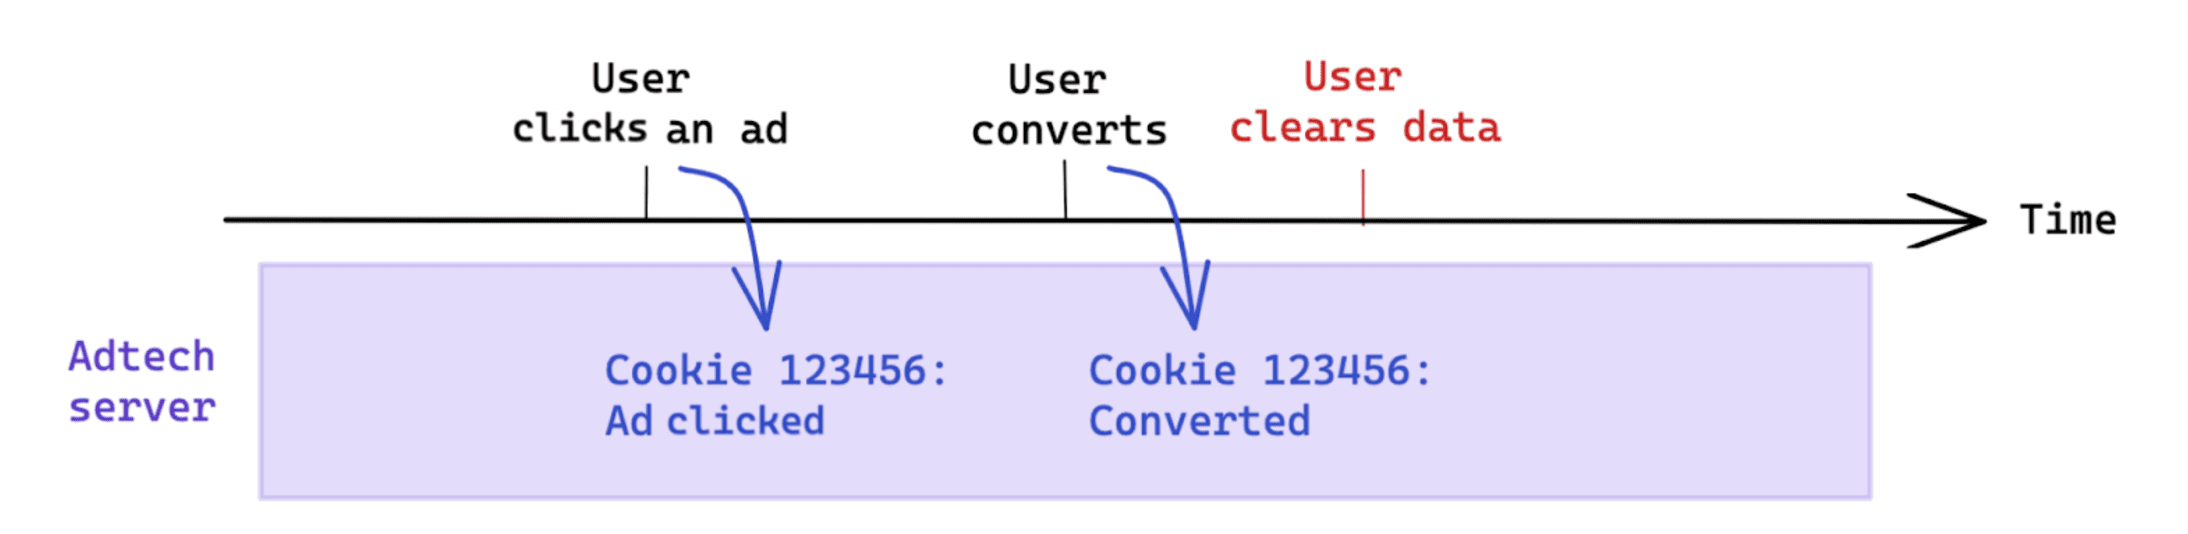 La eliminación de datos iniciada por el usuario después de una conversión no afecta la medición basada en cookies.